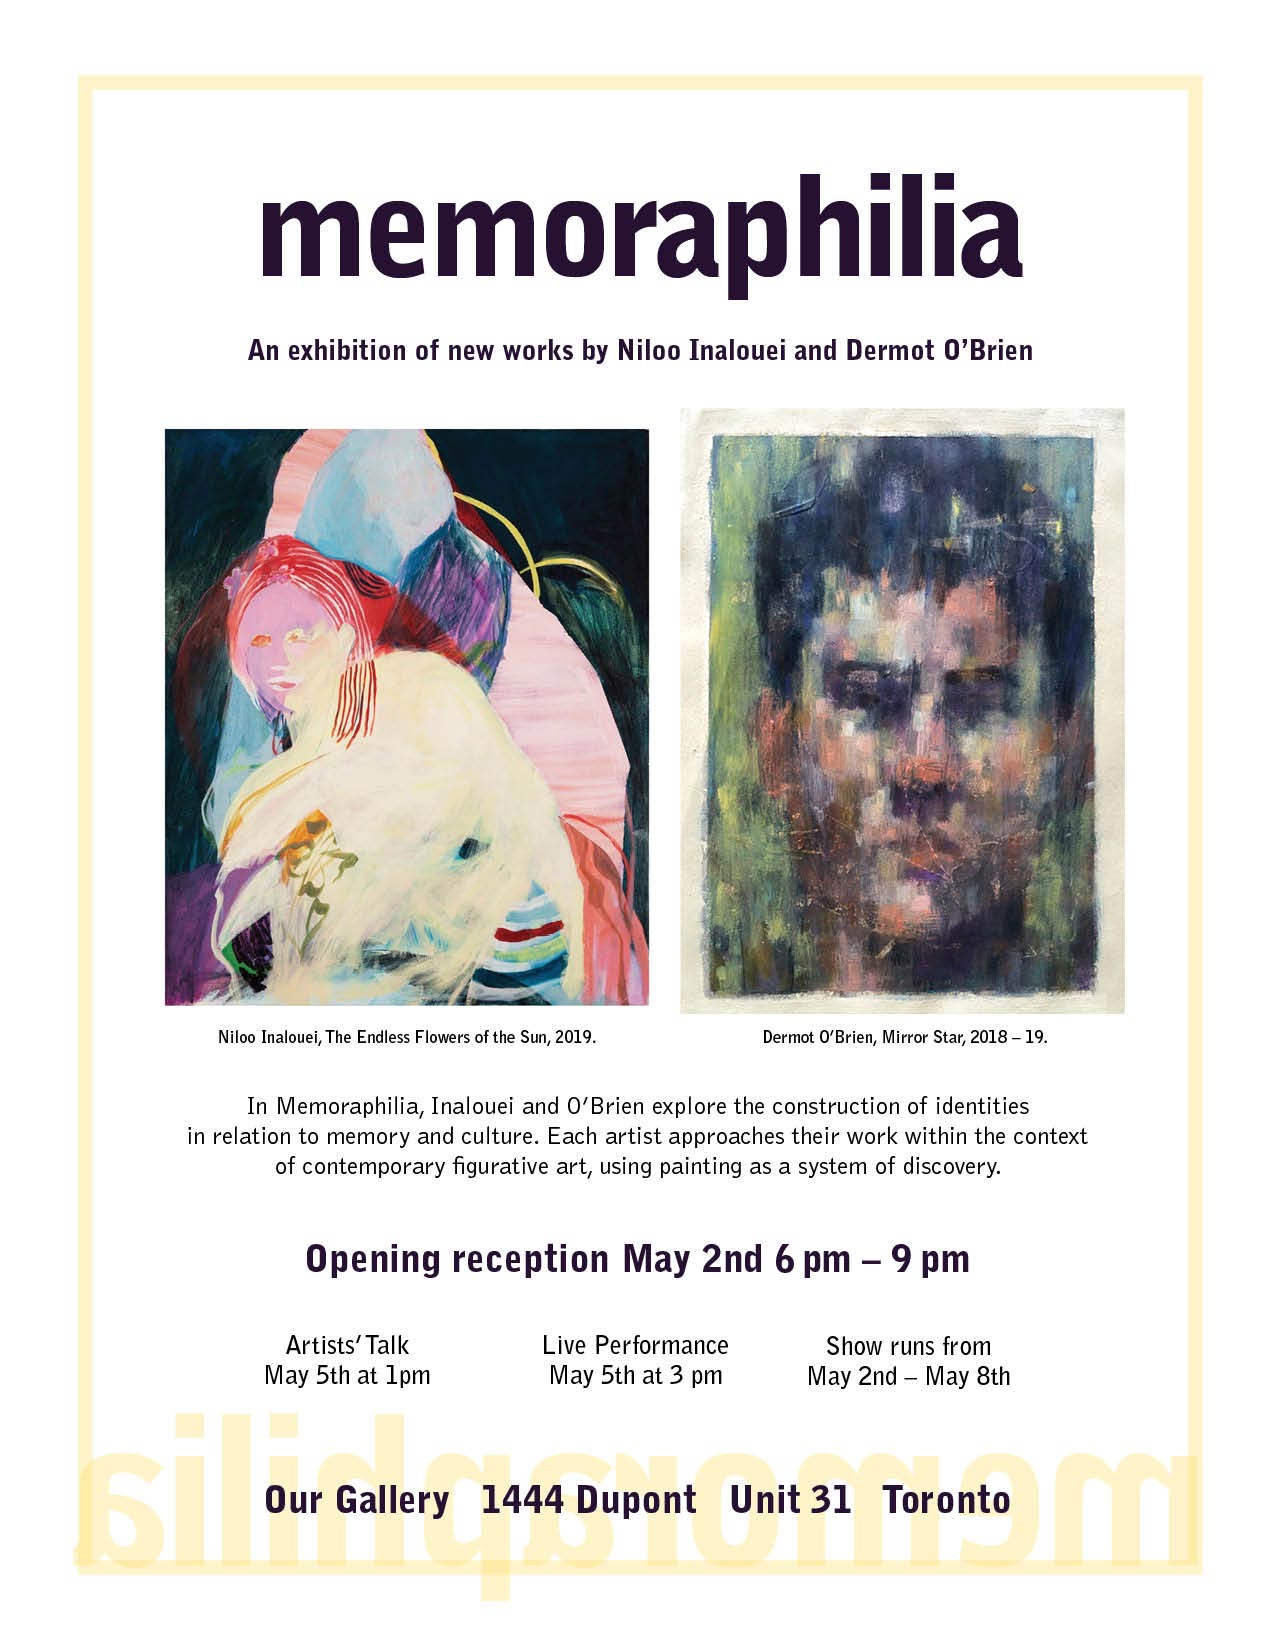 Memoraphilia Invitation, May 2, 2019